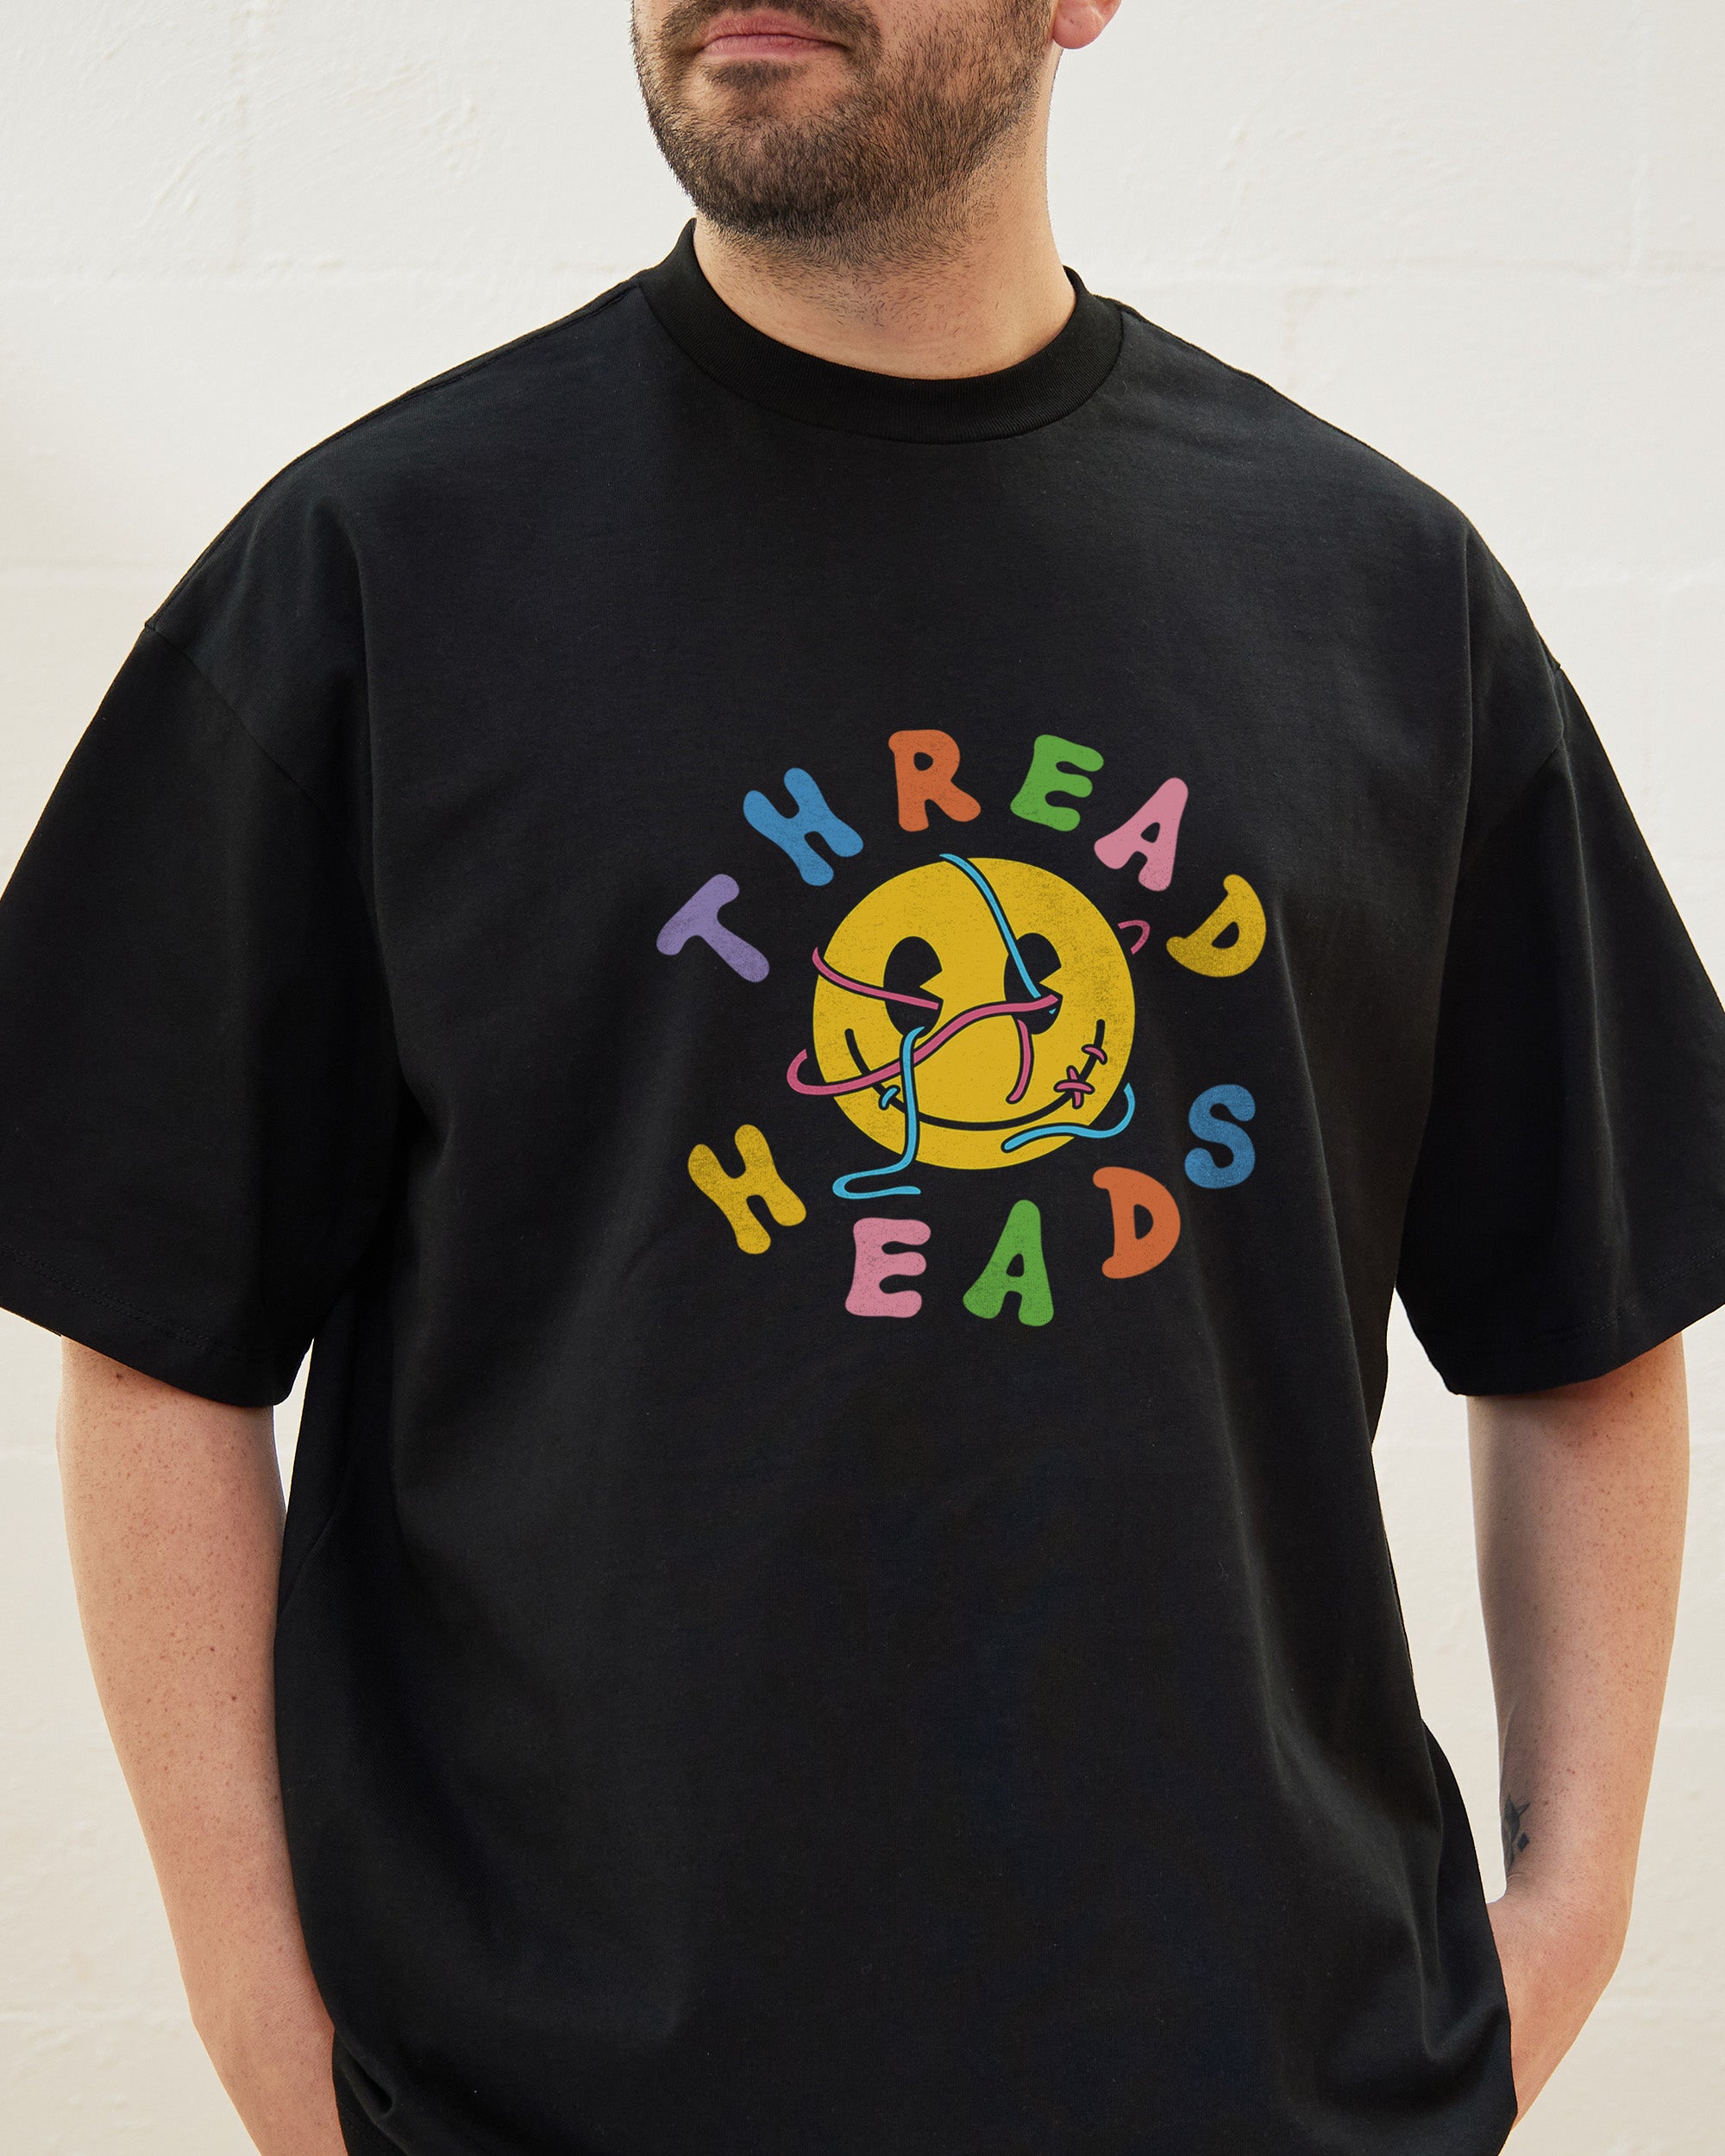 Thread Heads Oversized Tee